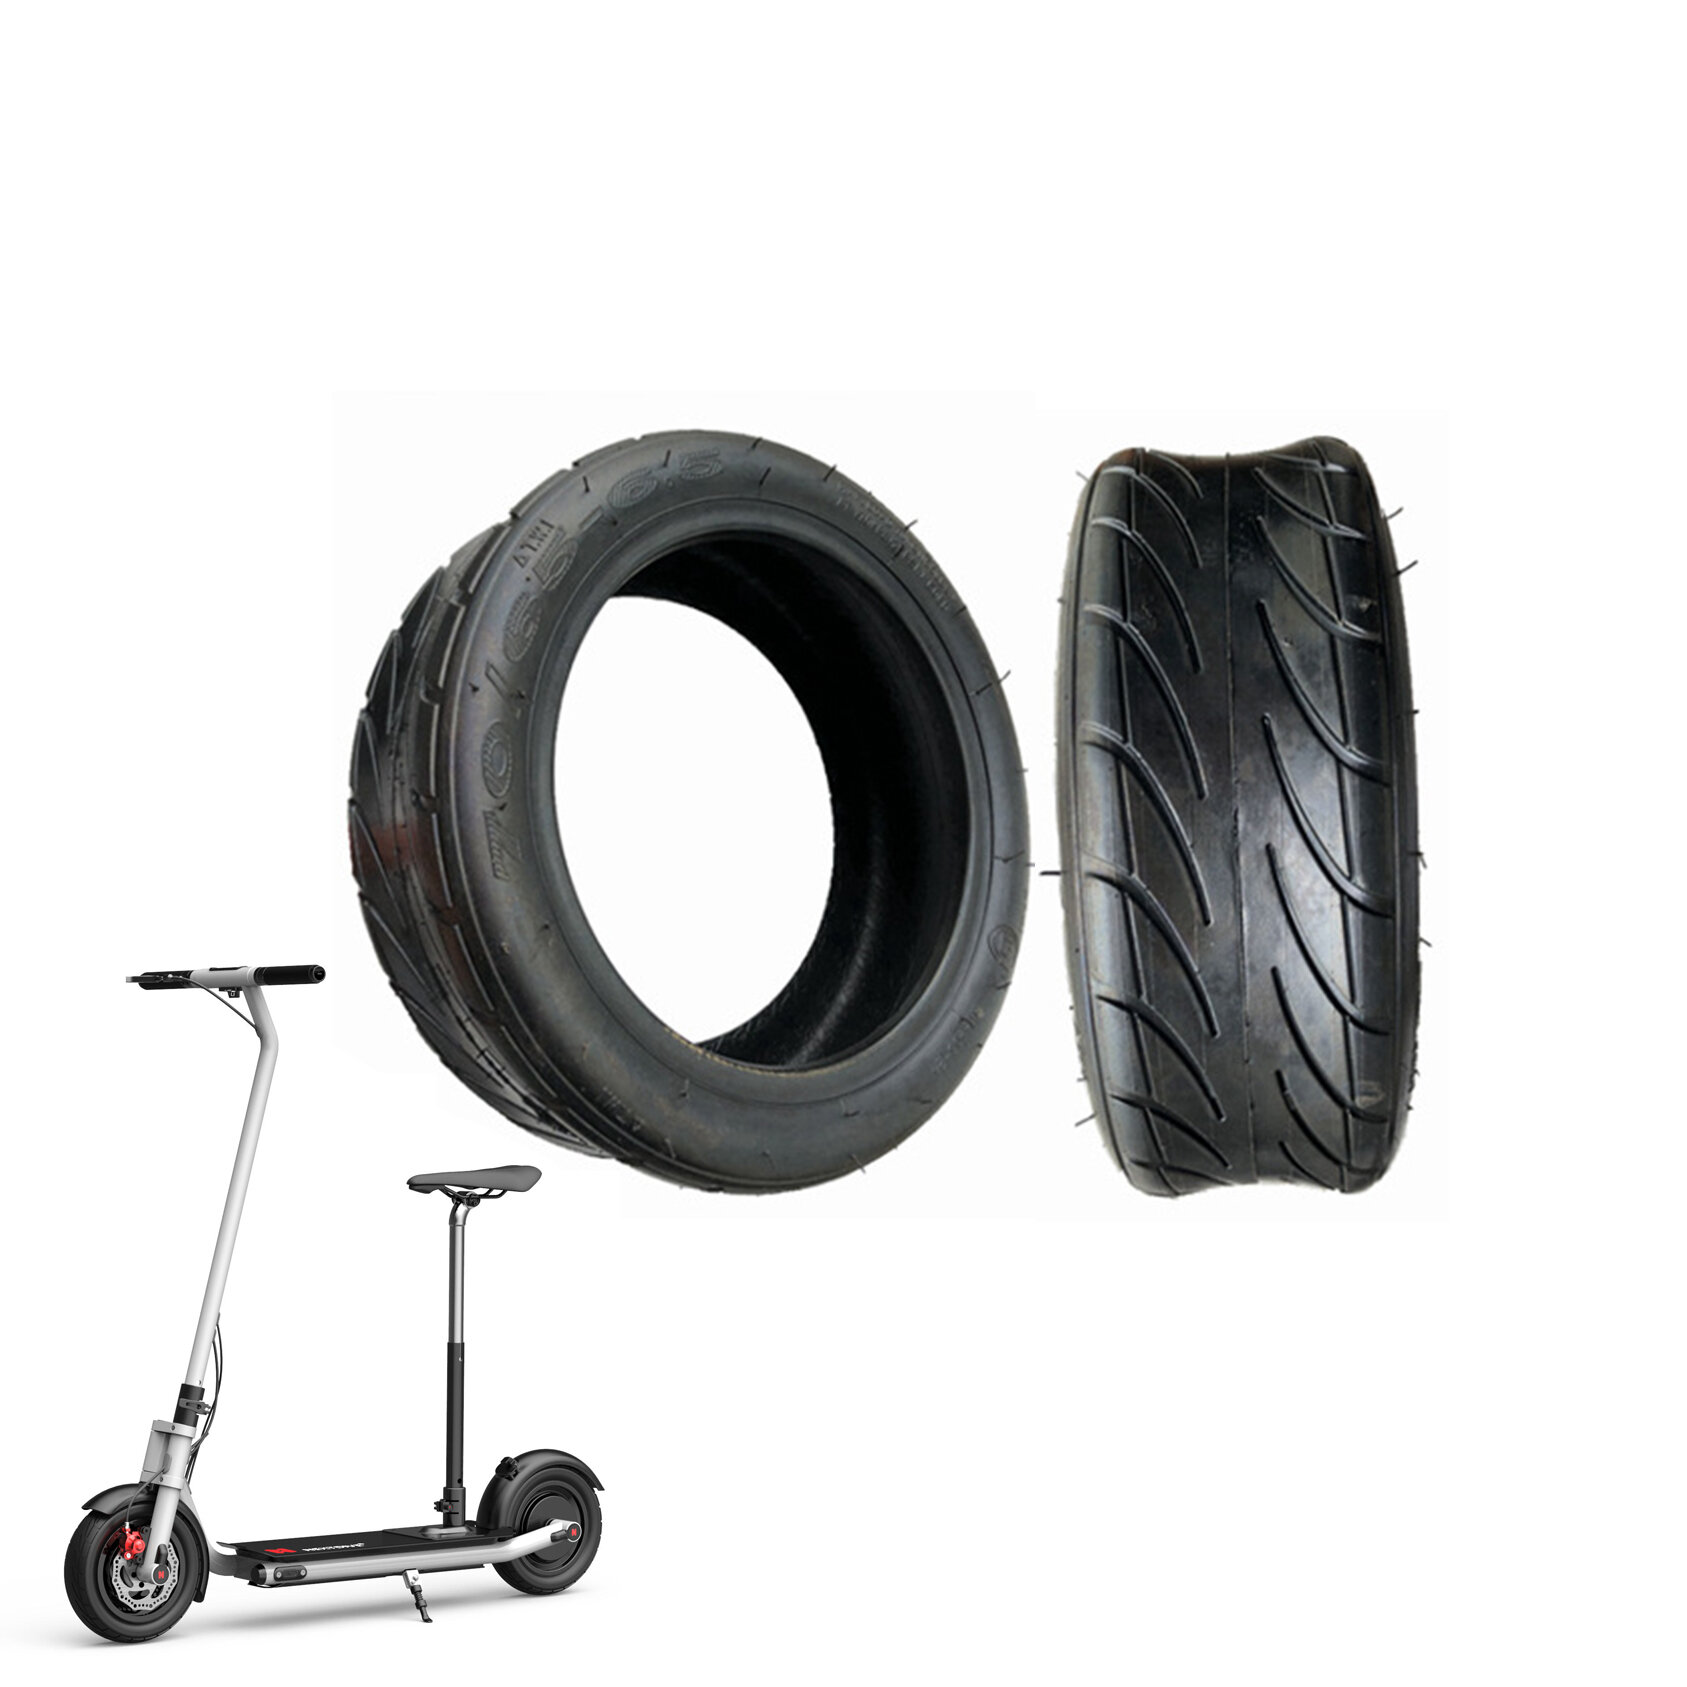 Schlauchloser Reifen NEXTDRIVE 70/65-6.5 10 Zoll für den faltbaren elektrischen Roller NEXTDRIVE N-7 mit selbstausgleich